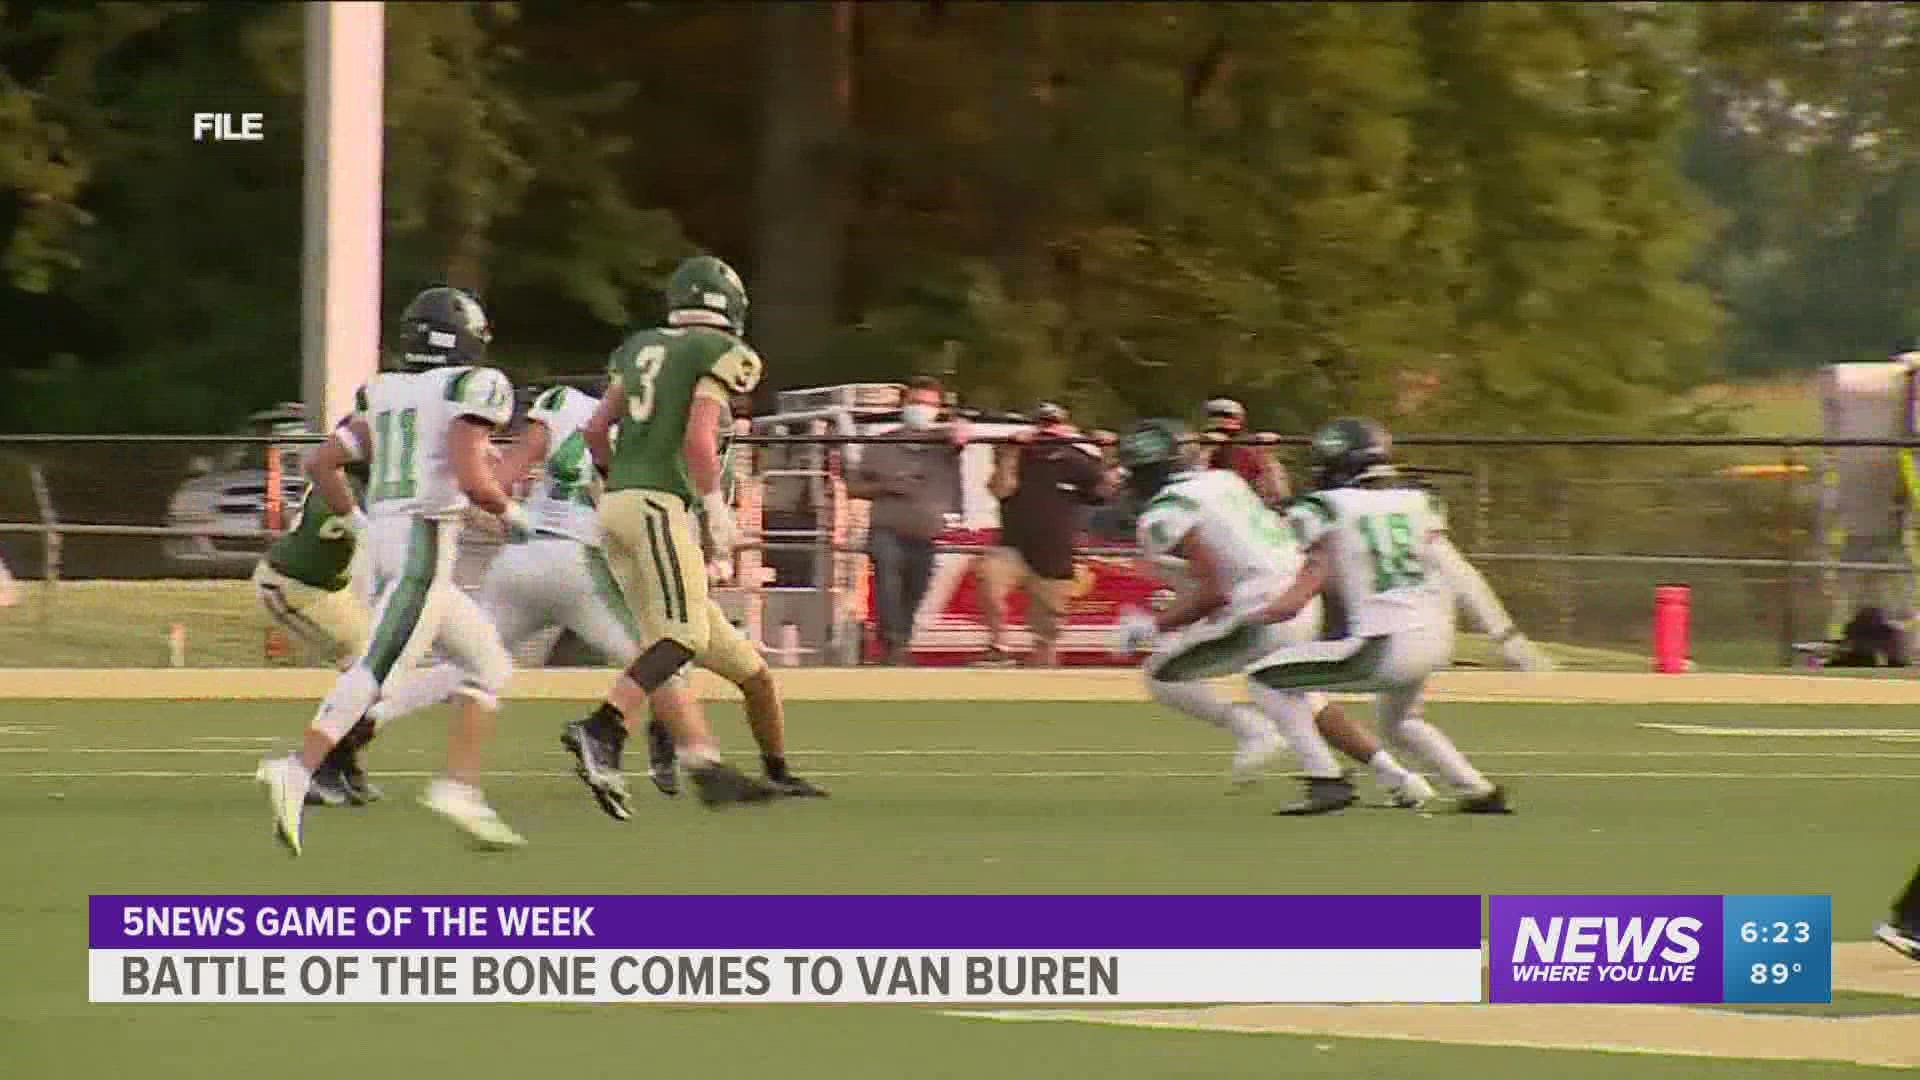 Battle of the Bone: Van Buren's perspective